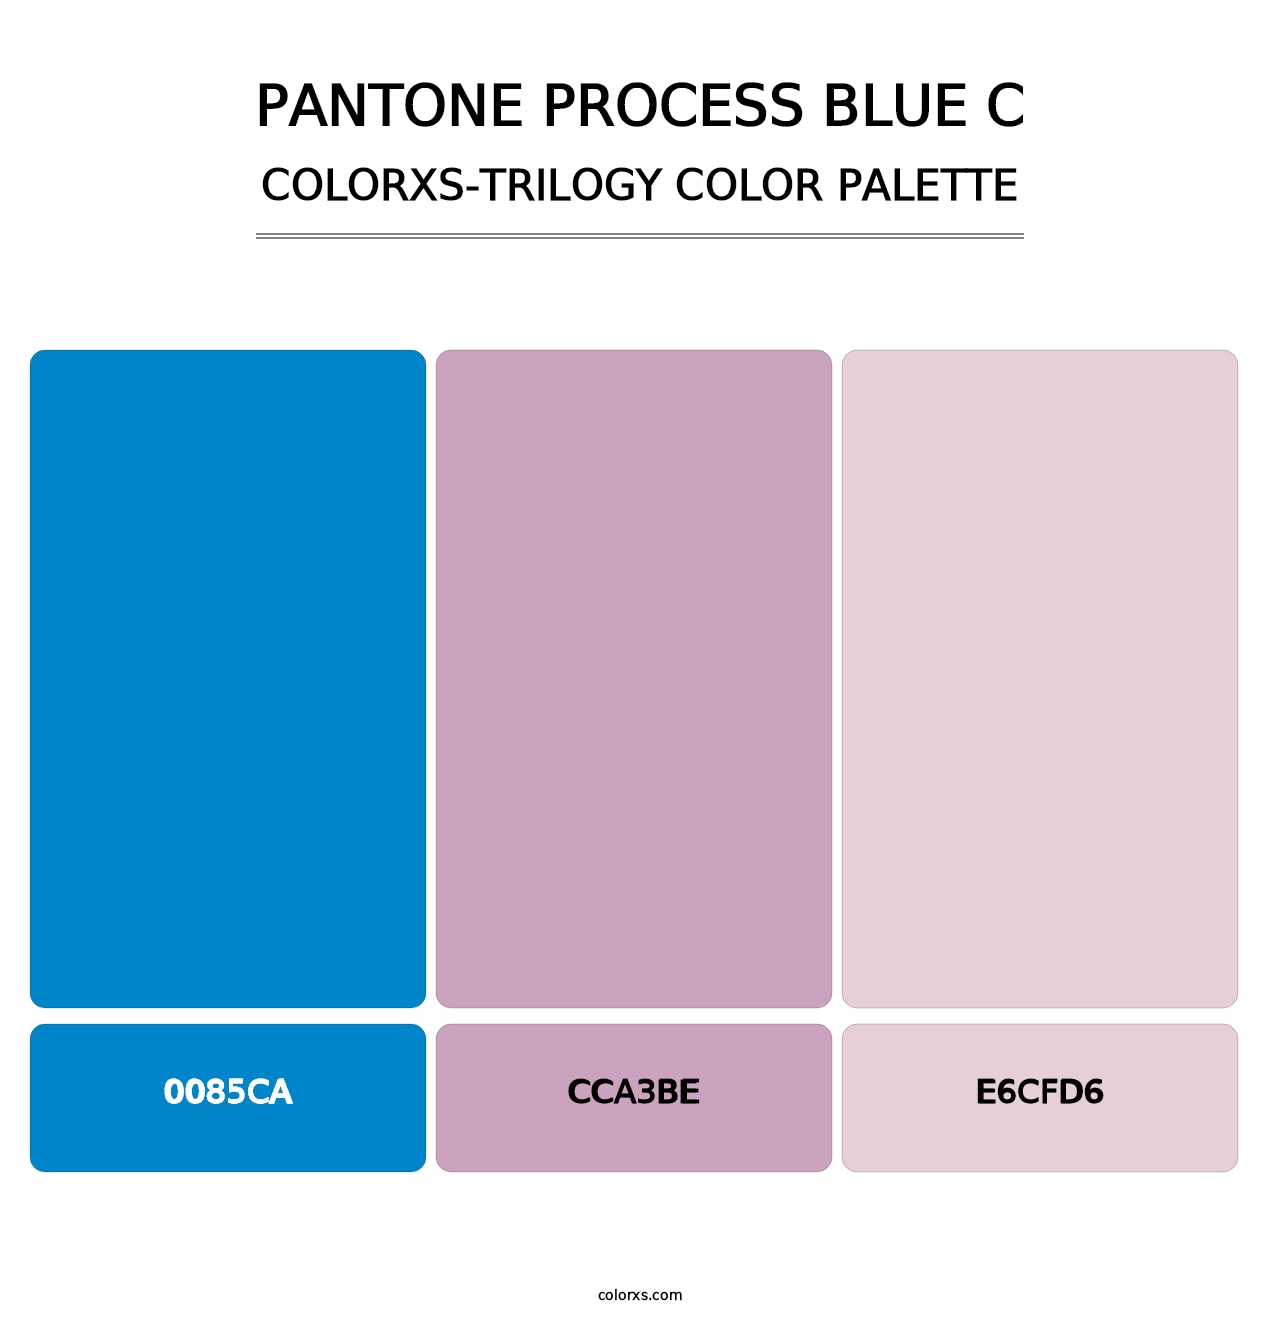 PANTONE Process Blue C - Colorxs Trilogy Palette